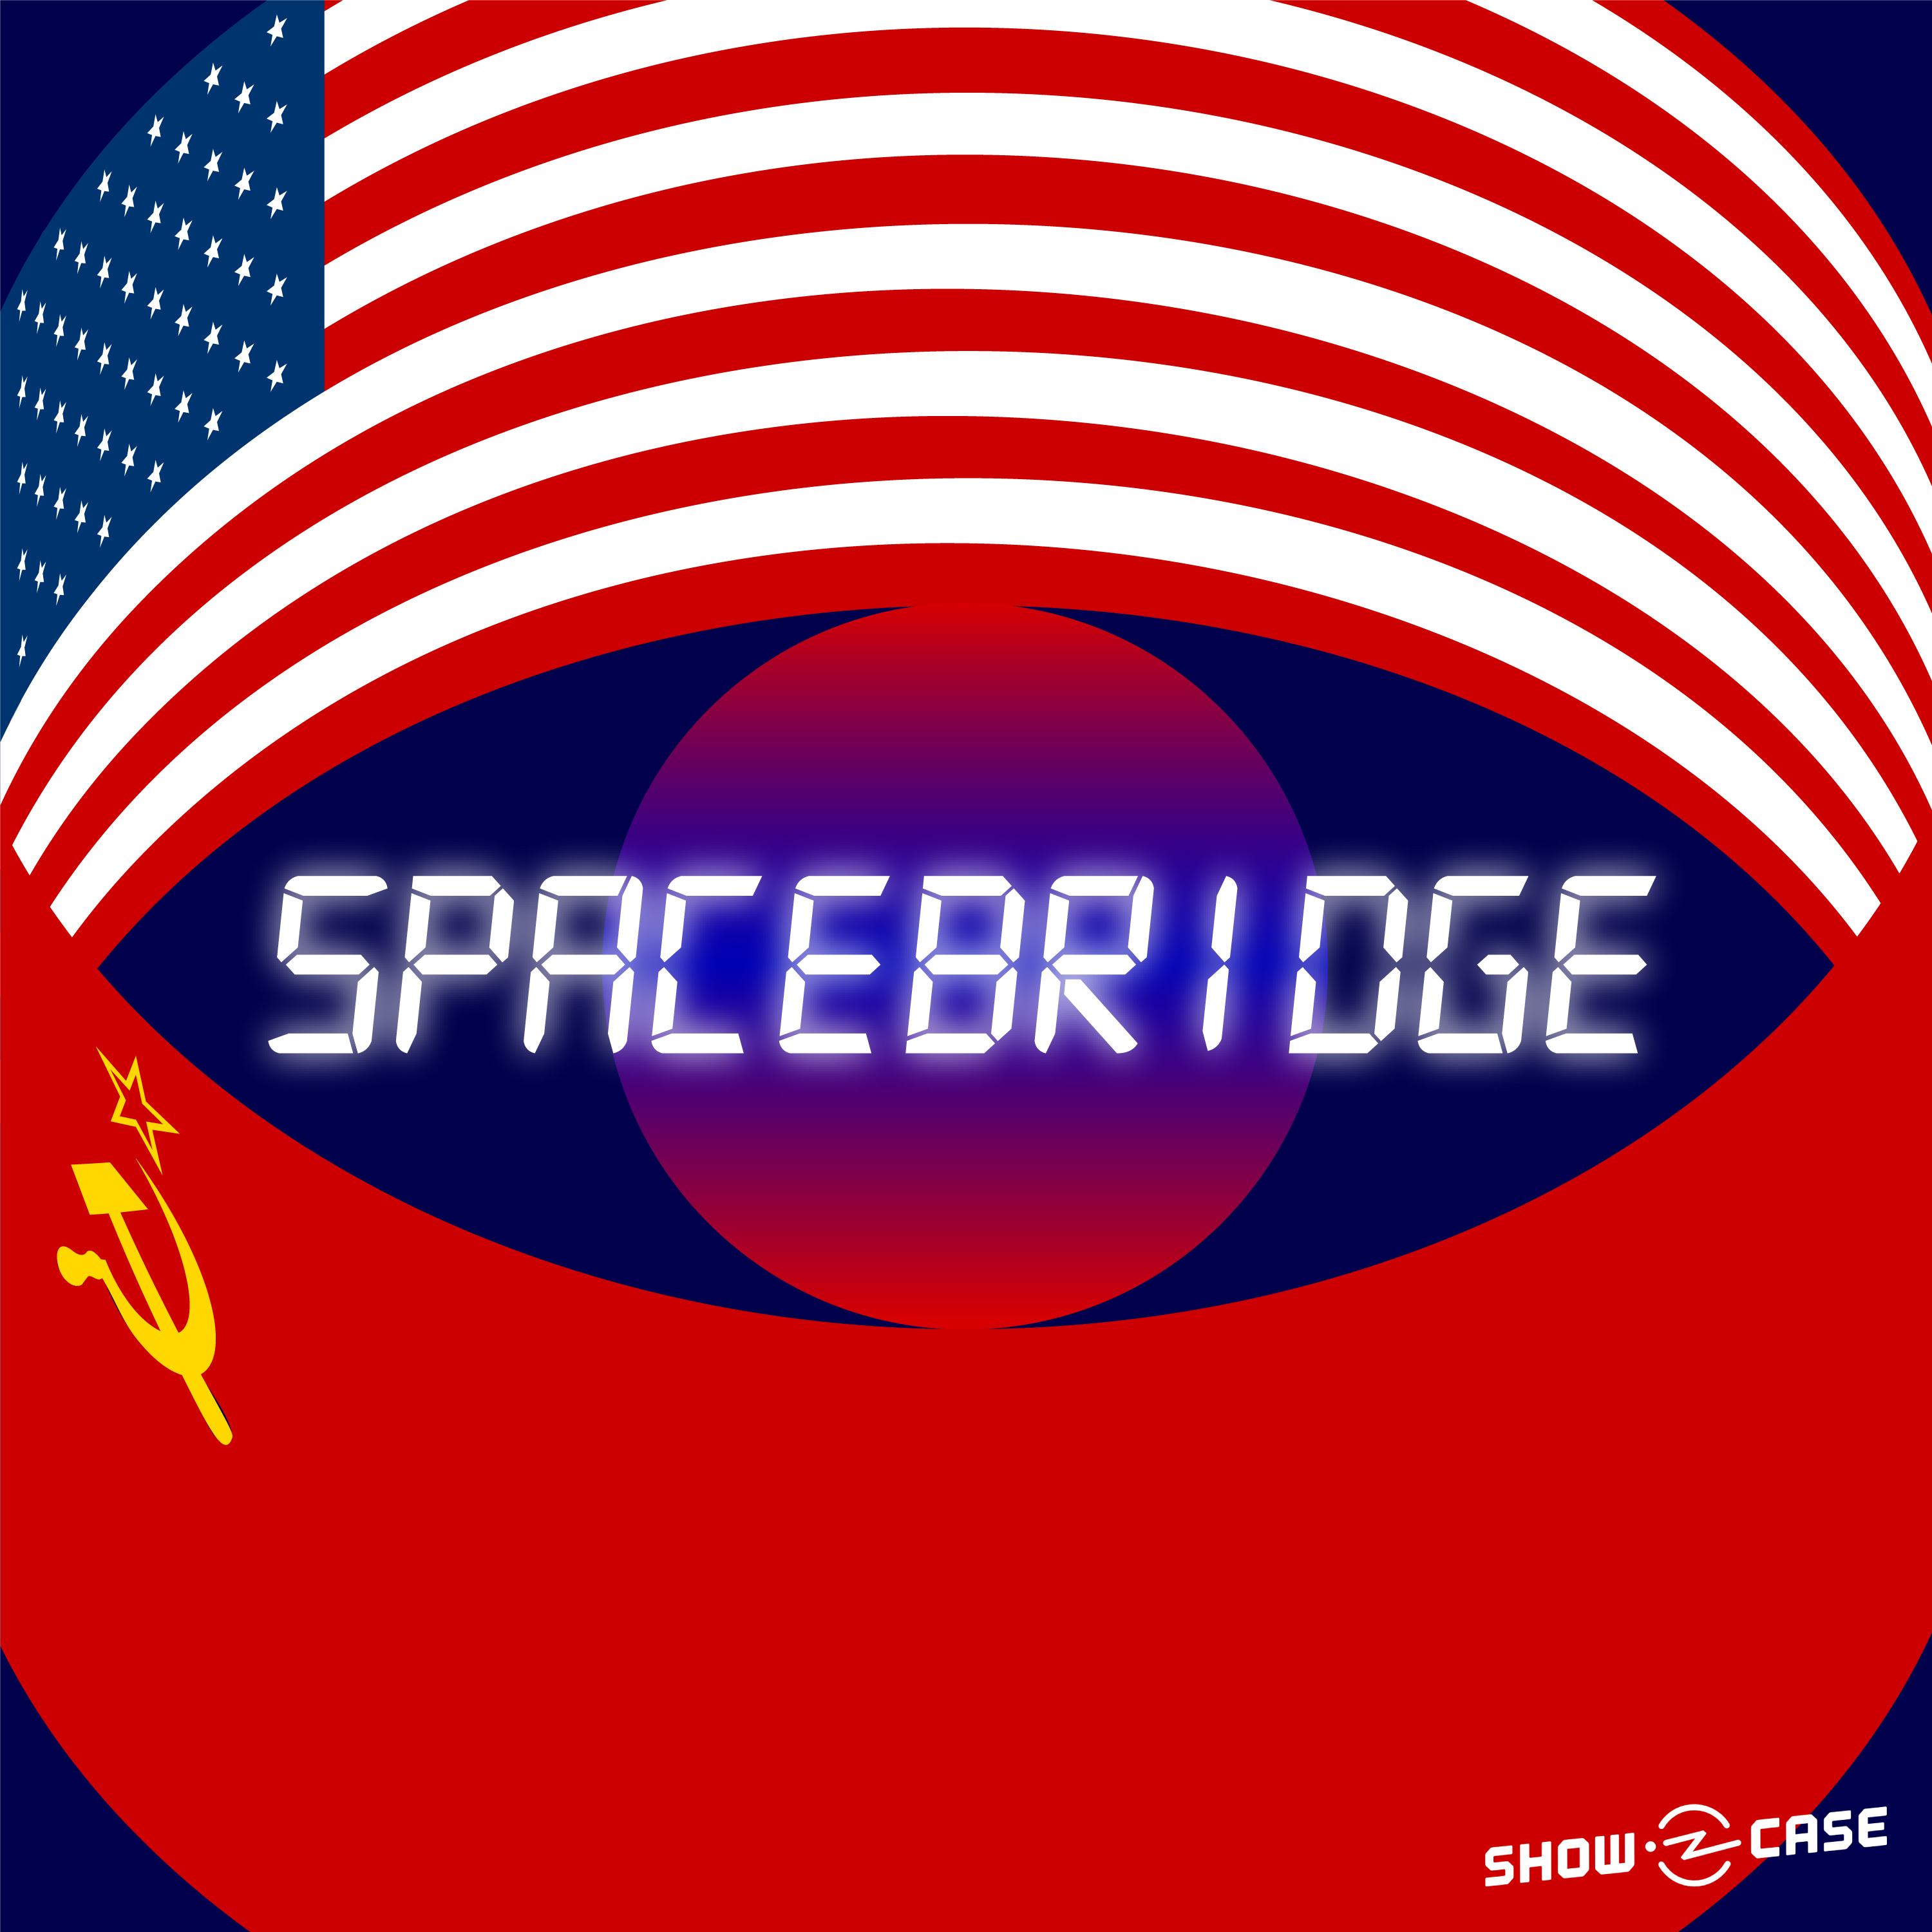 Thumbnail for "Next on Showcase: Spacebridge".